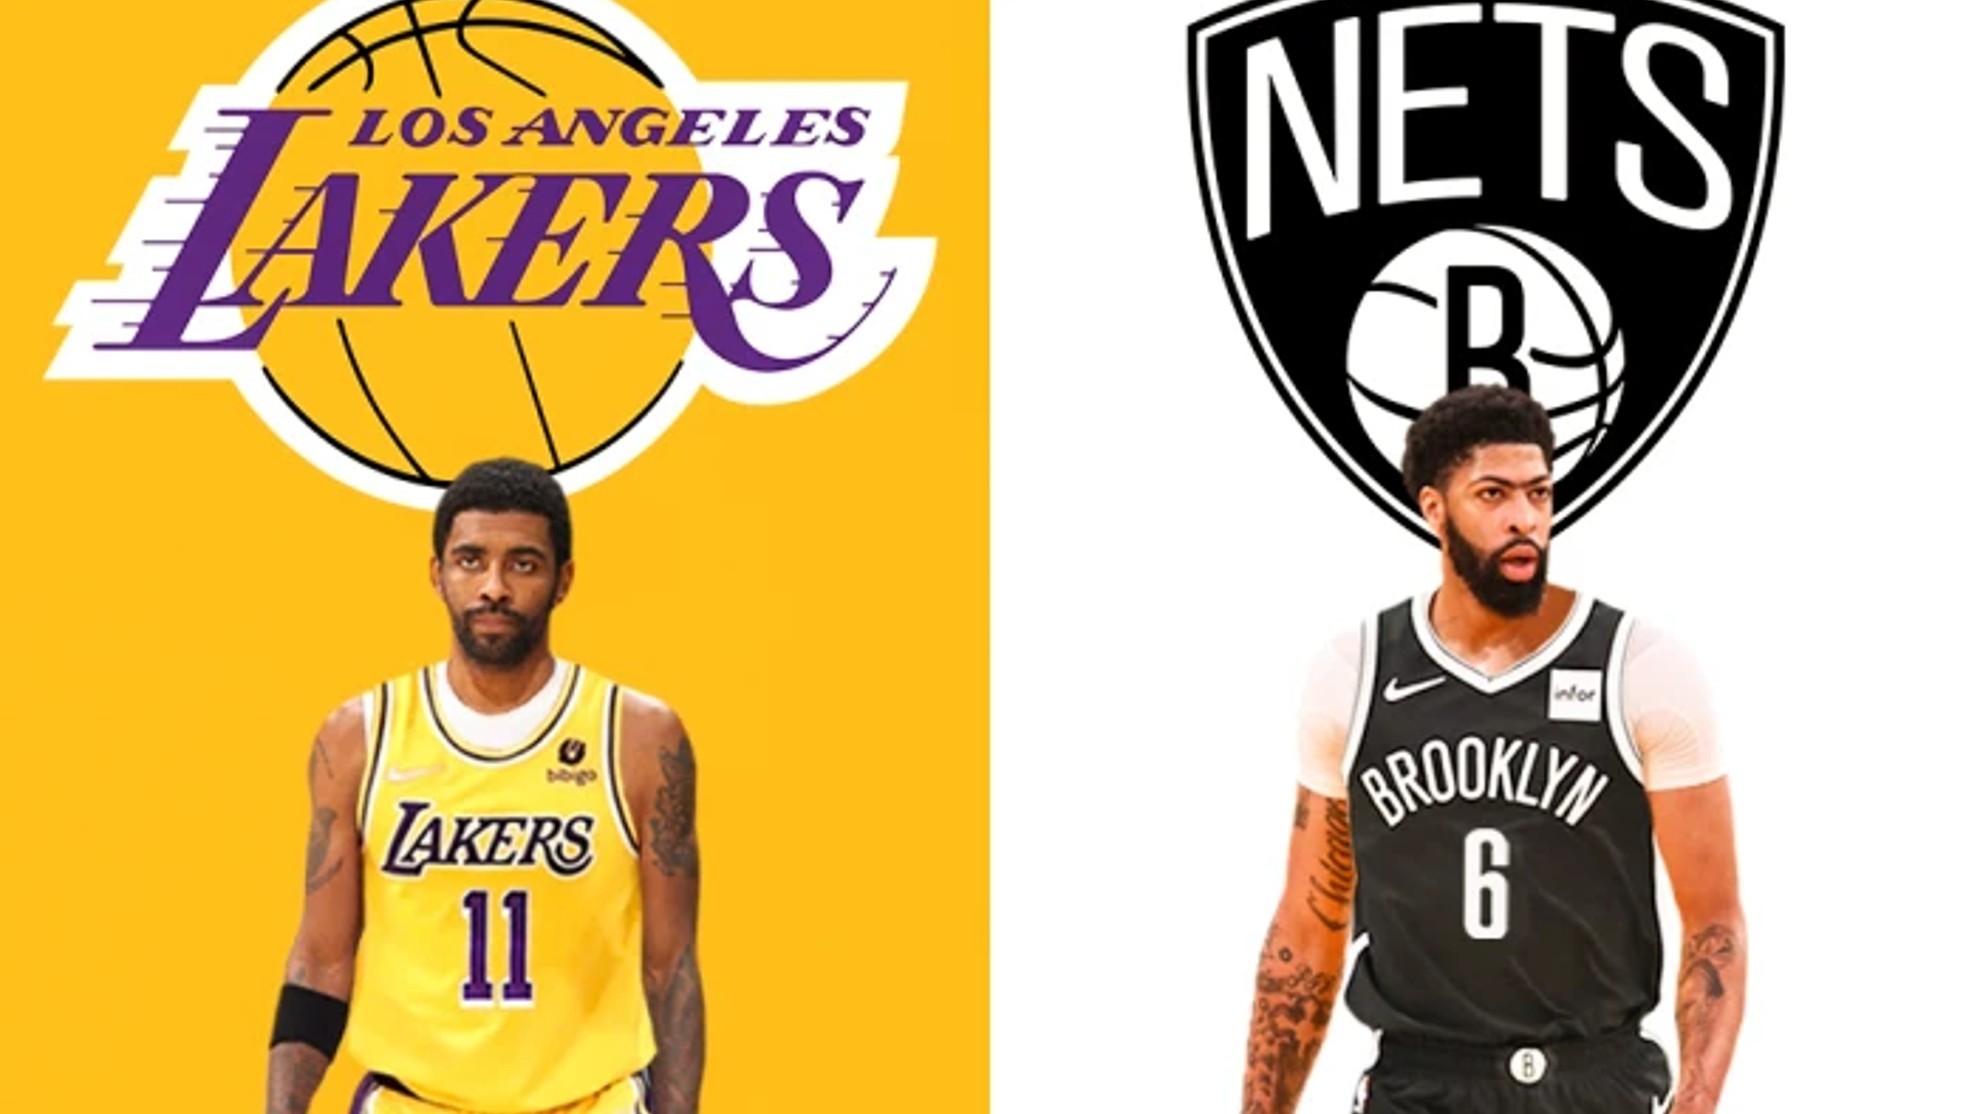 Así les quedarían las camisetas de Lakers y Nets a Irving y Davis, respectivamente.